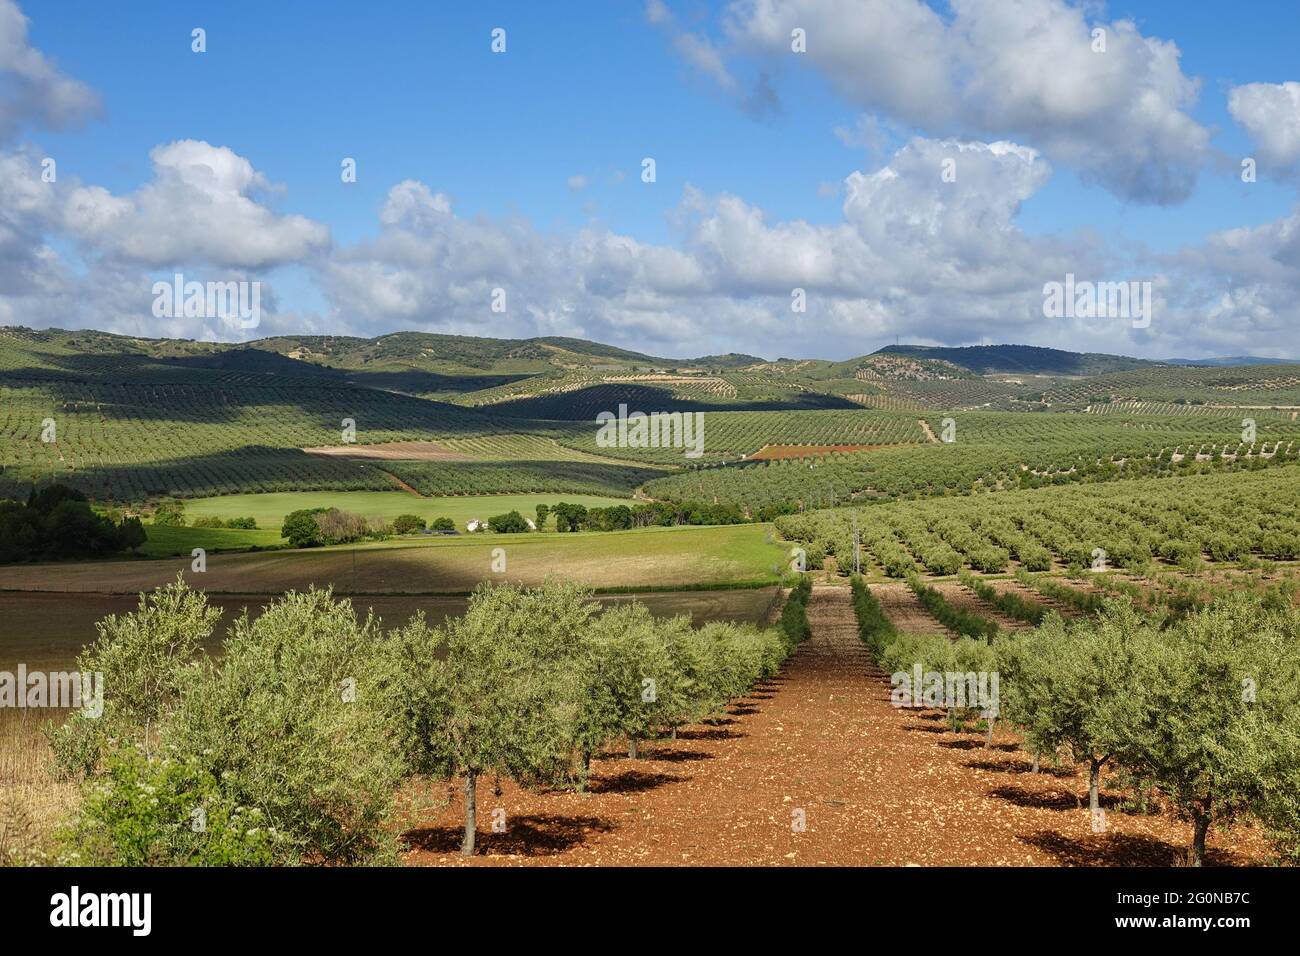 Blick auf große landwirtschaftliche Flächen von Olivenbäumen in der andalusischen Landschaft (Spanien) Stockfoto